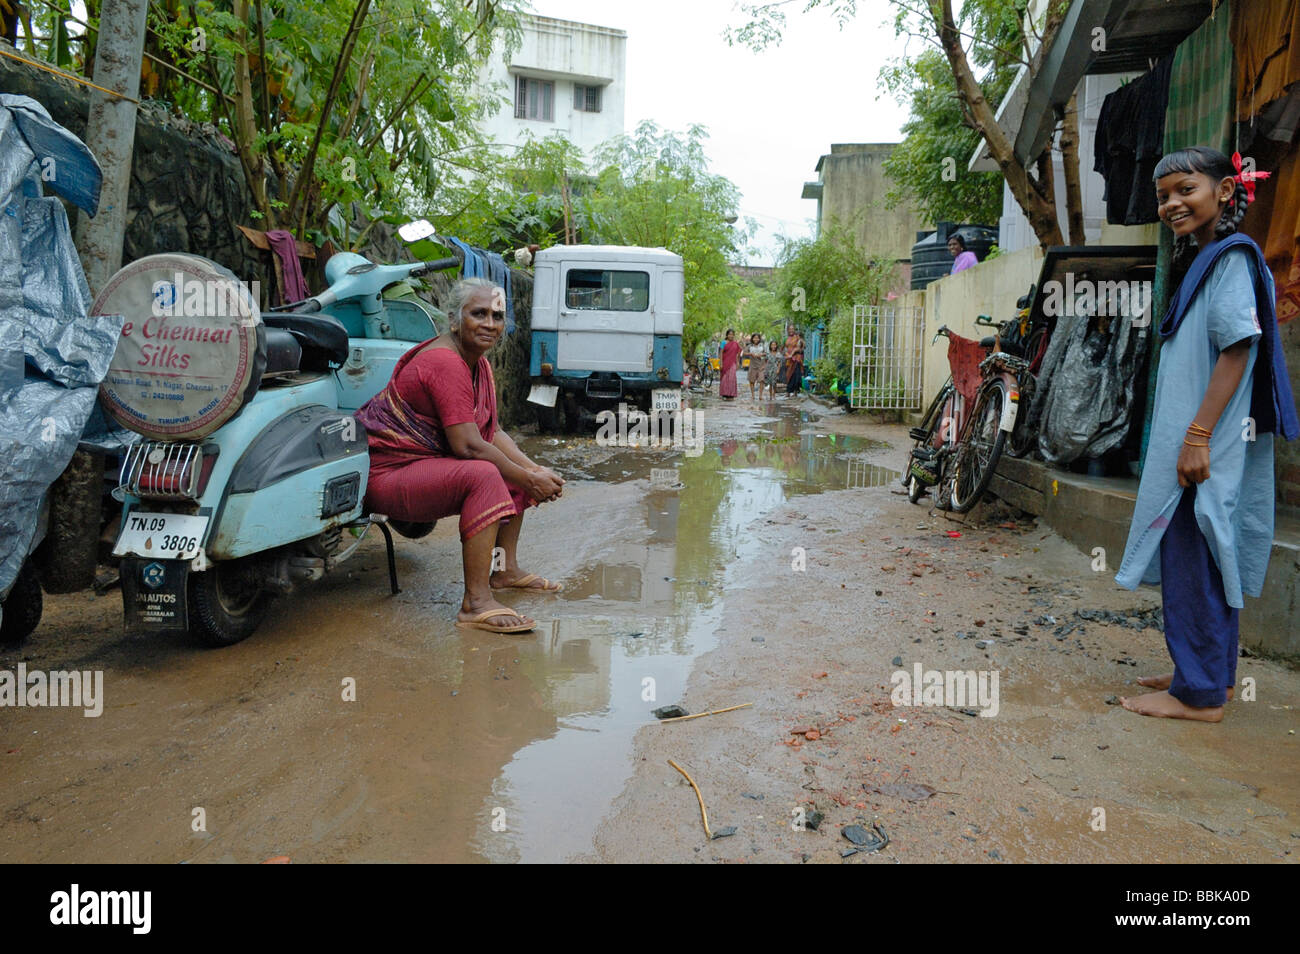 Typische Straße Szene während der Regenzeit in einem der Chennai viele s Slum-Gebieten; Indien, Tamil Nadu, Chennai (Madras). Stockfoto